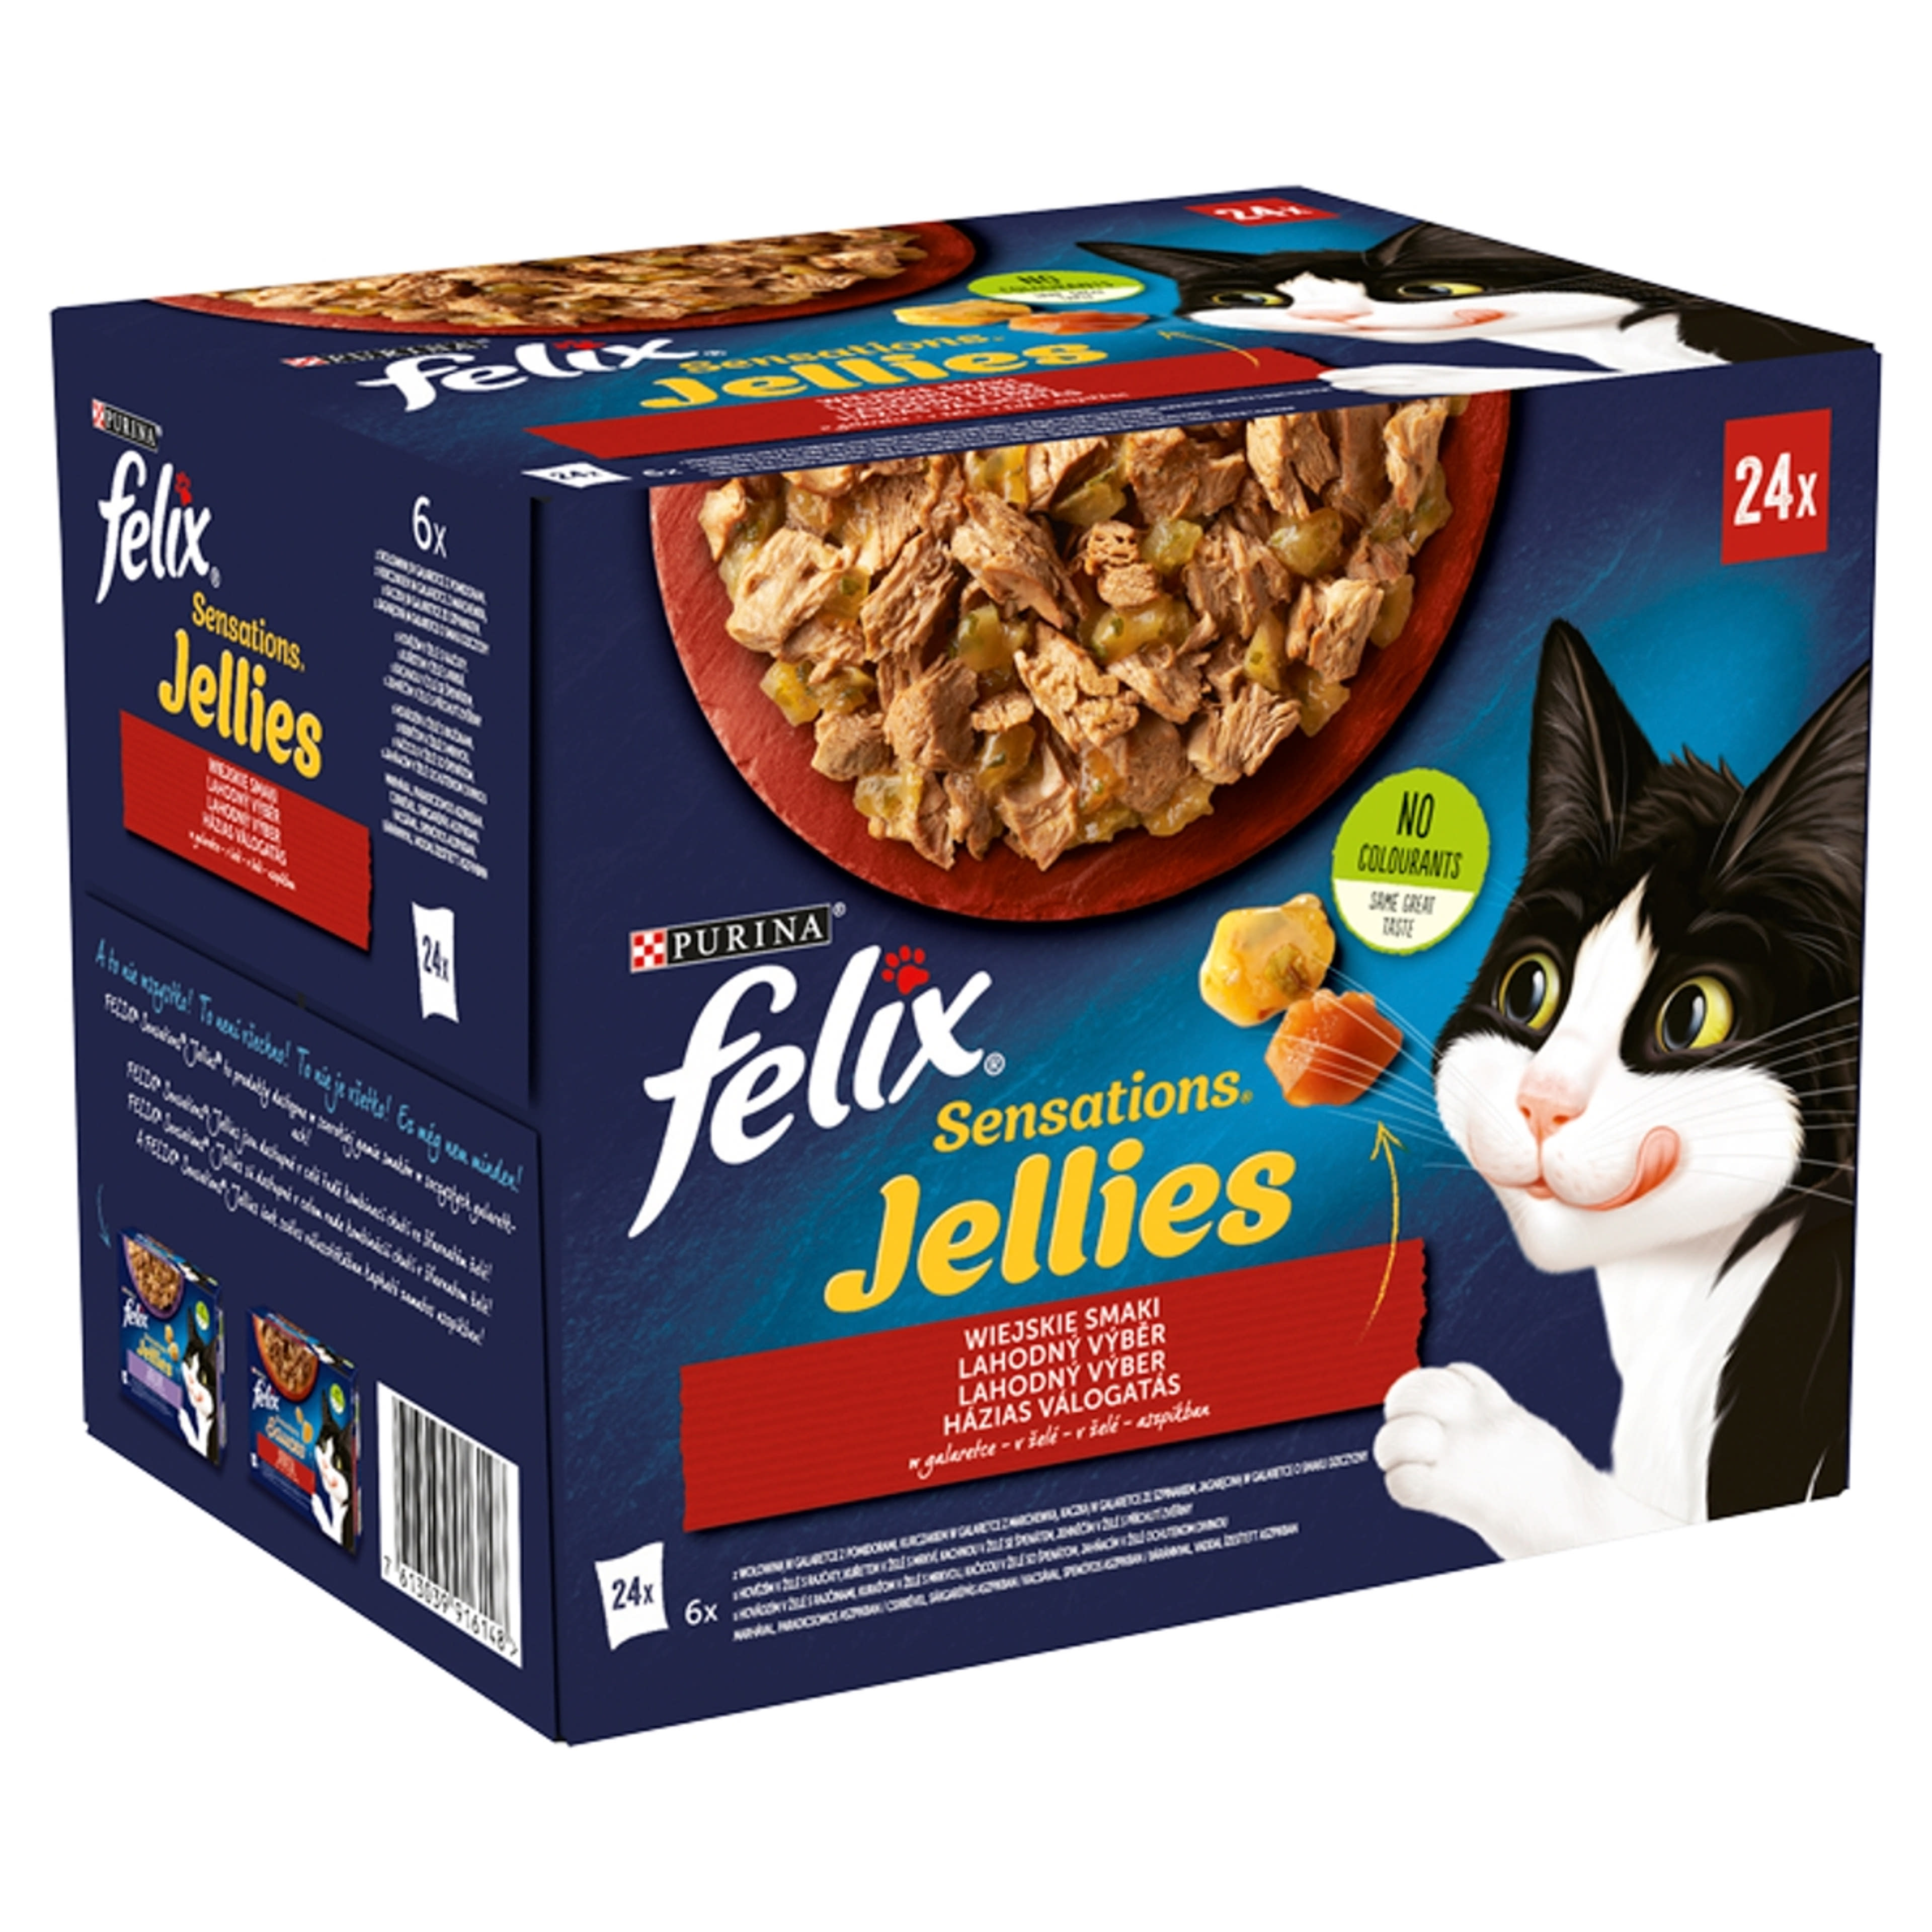 Felix Sensations Jellies házias válogatás aszpikban, nedves macskaeledel (24 x 85 g) - 2040 g